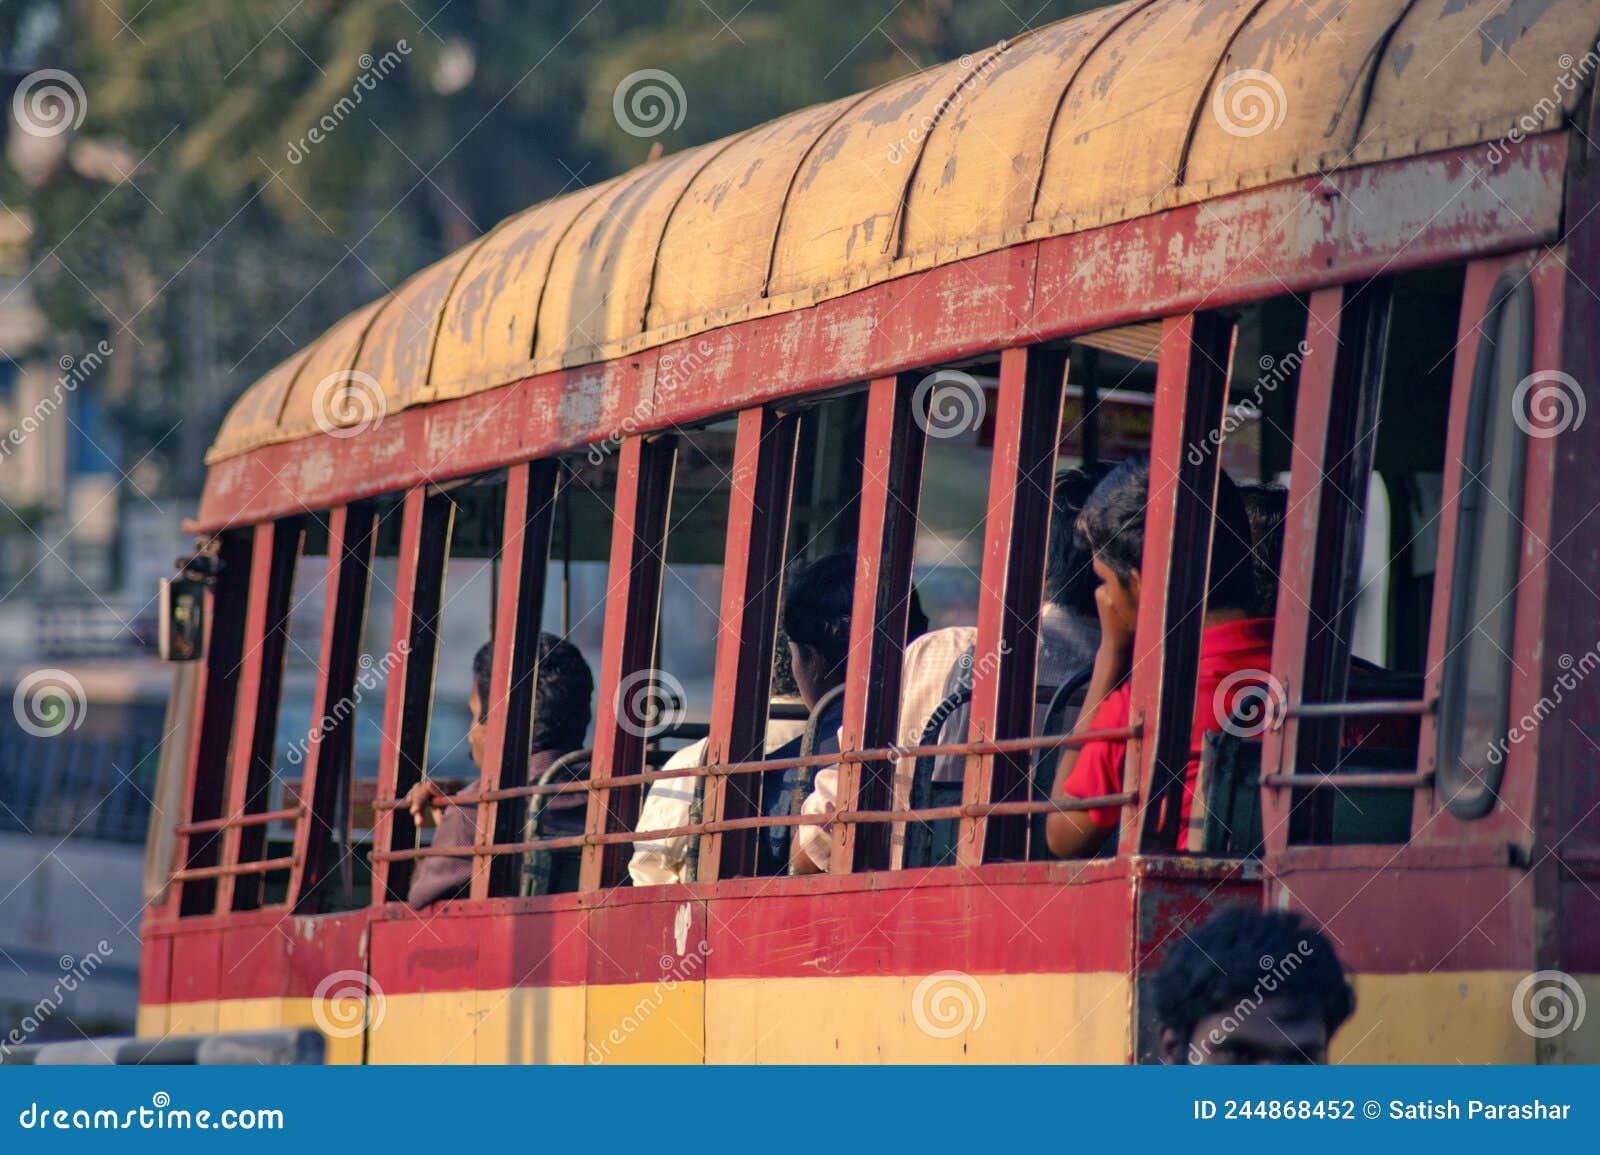 trivandrum tourist bus